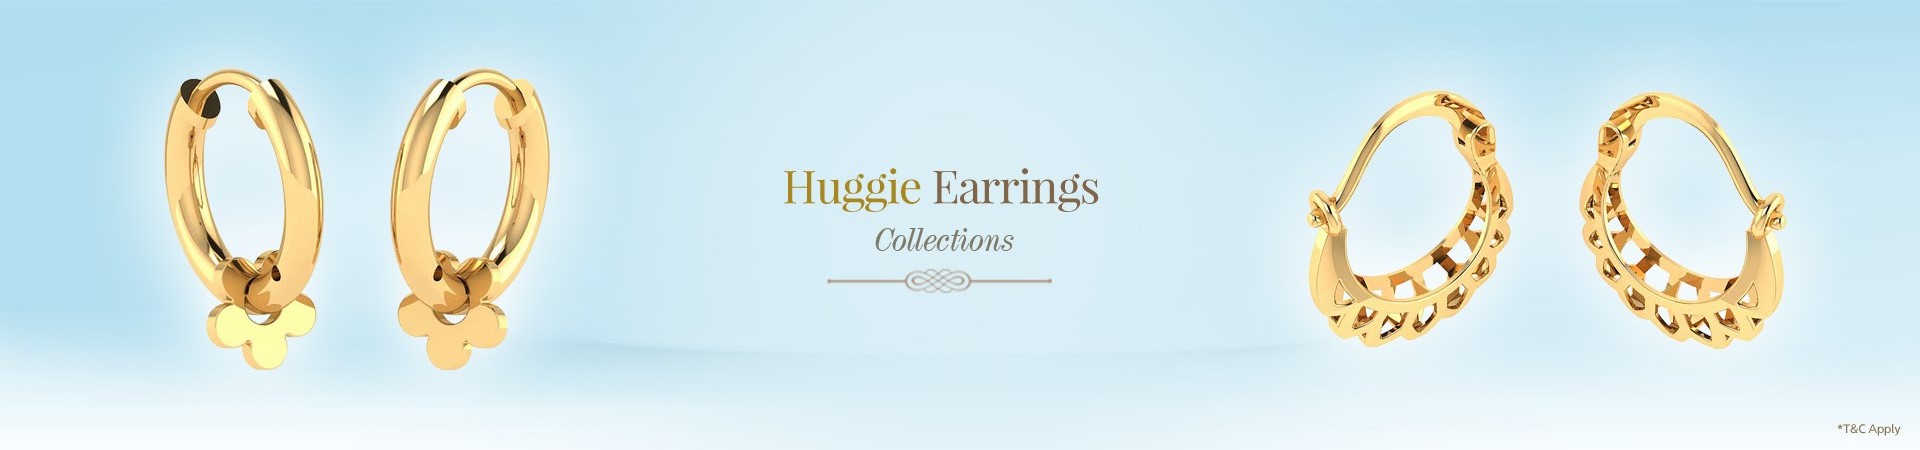 Gold Huggies Earrings Online